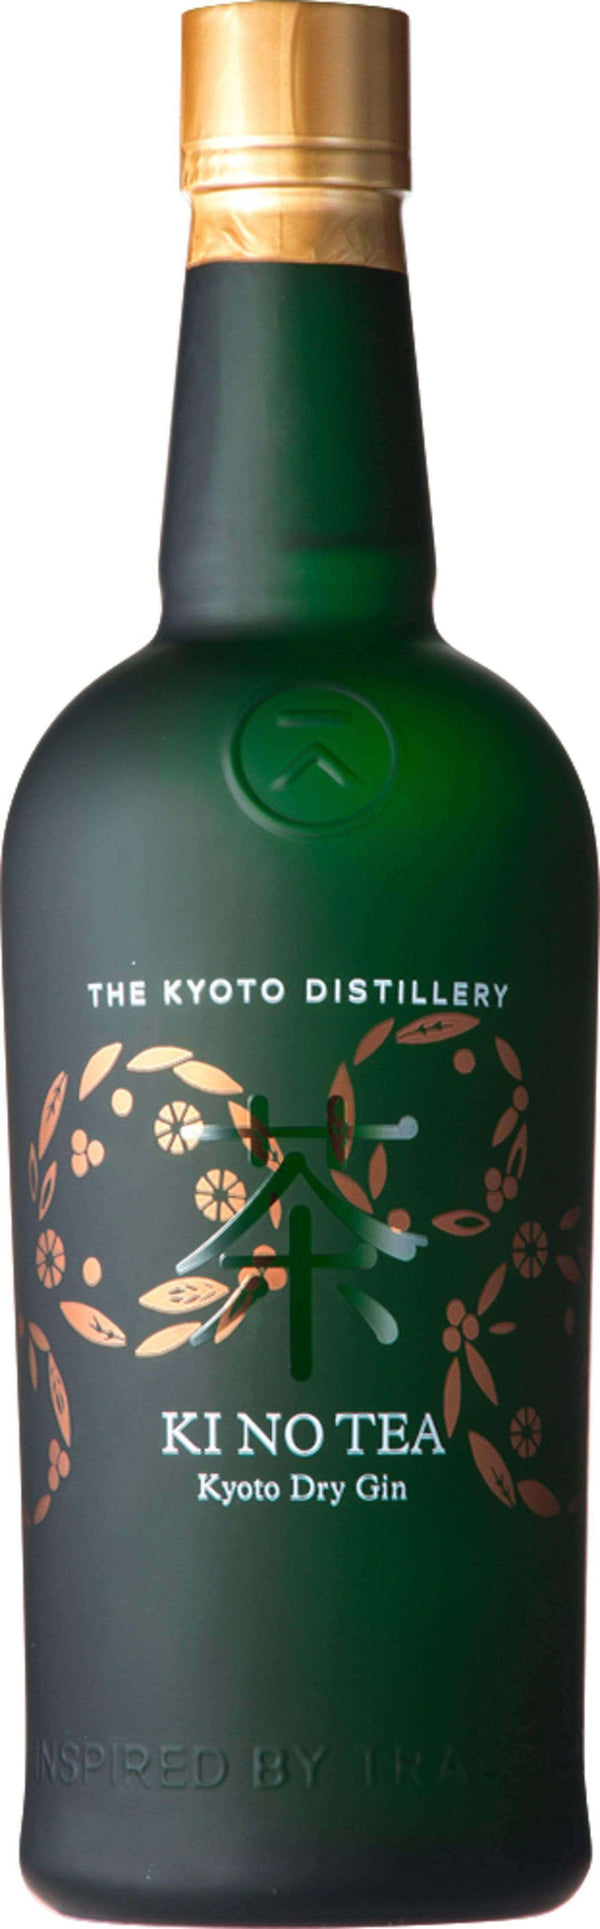 Ki No Tea Kyoto Dry Gin 700ml